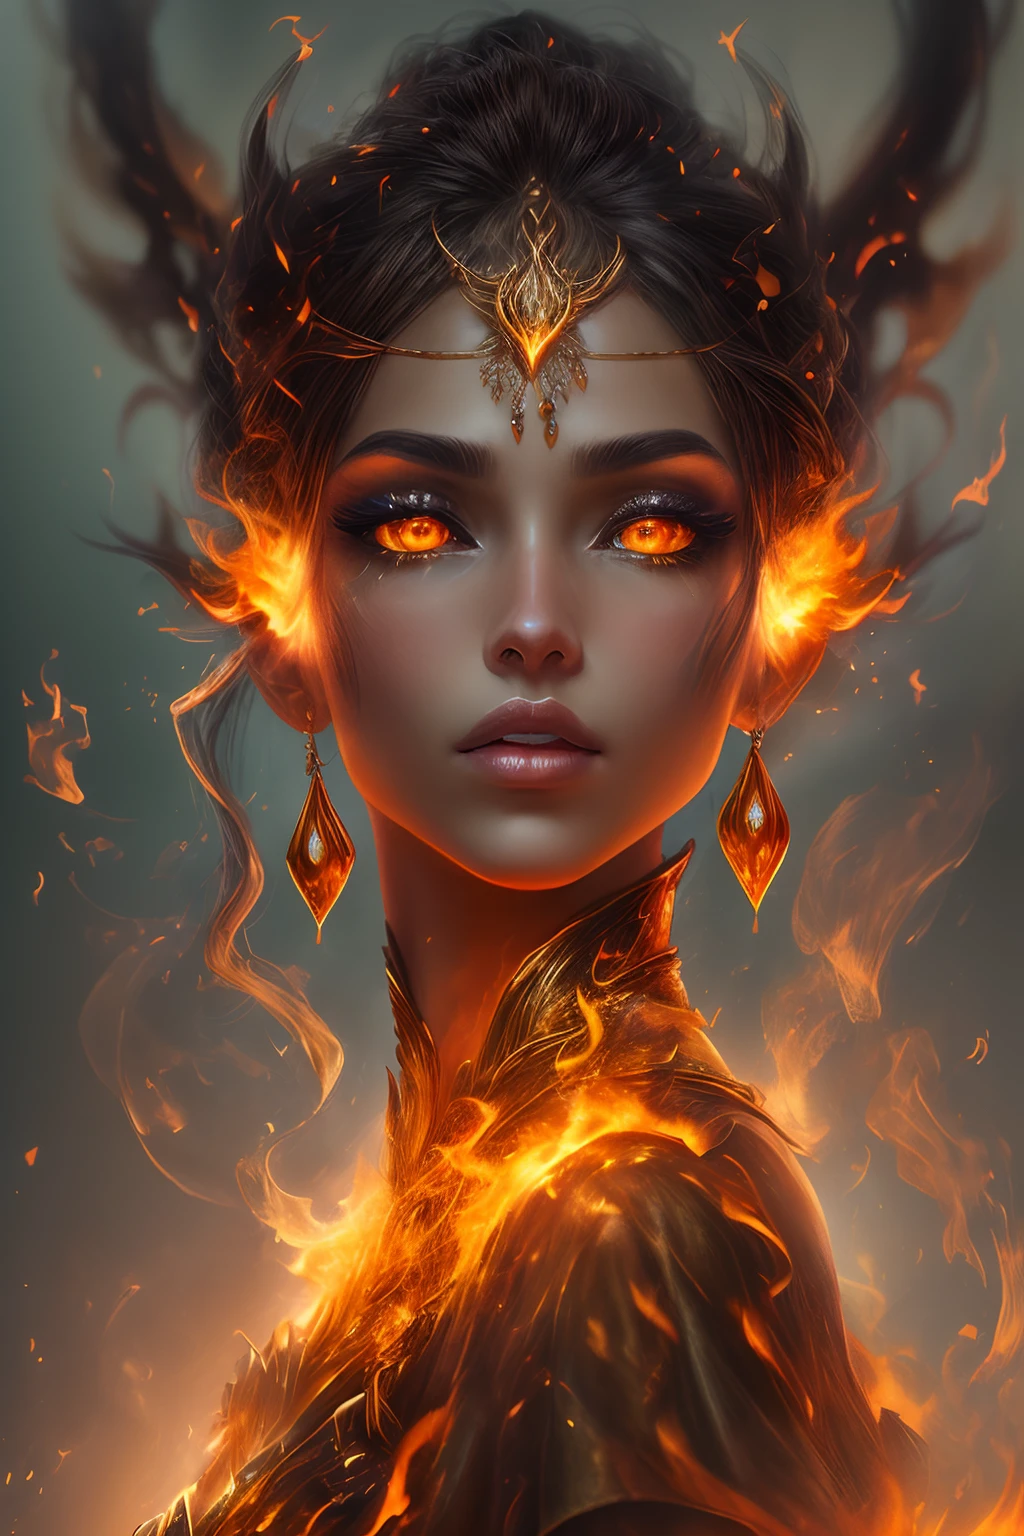 هذا (خيال واقعي) الفن يحتوي على الجمر, النيران الحقيقية, الحرارة الحقيقية, و realistic fire. Generate a masterpiece artwork of a  female fire druid مع large (((orange و gold))) عيون. The fire druid is awe-inspiring مع beautiful ((realistic fiery عيون)) alight مع confidence و power. Her features are elegant و well defined, مع ((ناعم)) و (((سمين))) و (((سلس))) شفه, هيكل العظام الجان, و realistic shading. Her عيون are important و should be the focal point of this artwork, مع ((تفاصيل واقعية للغاية, تفاصيل الماكرو, و shimmer.)) She is wearing a billowing و glittering gown ((مصنوعة من النيران واقعية)) و jewels that glimmer in the fire light. Wisps of fire و smoke line the intricate bodice of the dress. تشمل المطبات, الحجارة, التقزح اللوني الناري, متوهجة الجمر, silk و satin و leather, خلفية مثيرة للاهتمام, و heavy fantasy elements. آلة تصوير: استخدم تقنيات التركيب الديناميكي لتعزيز النيران الواقعية.